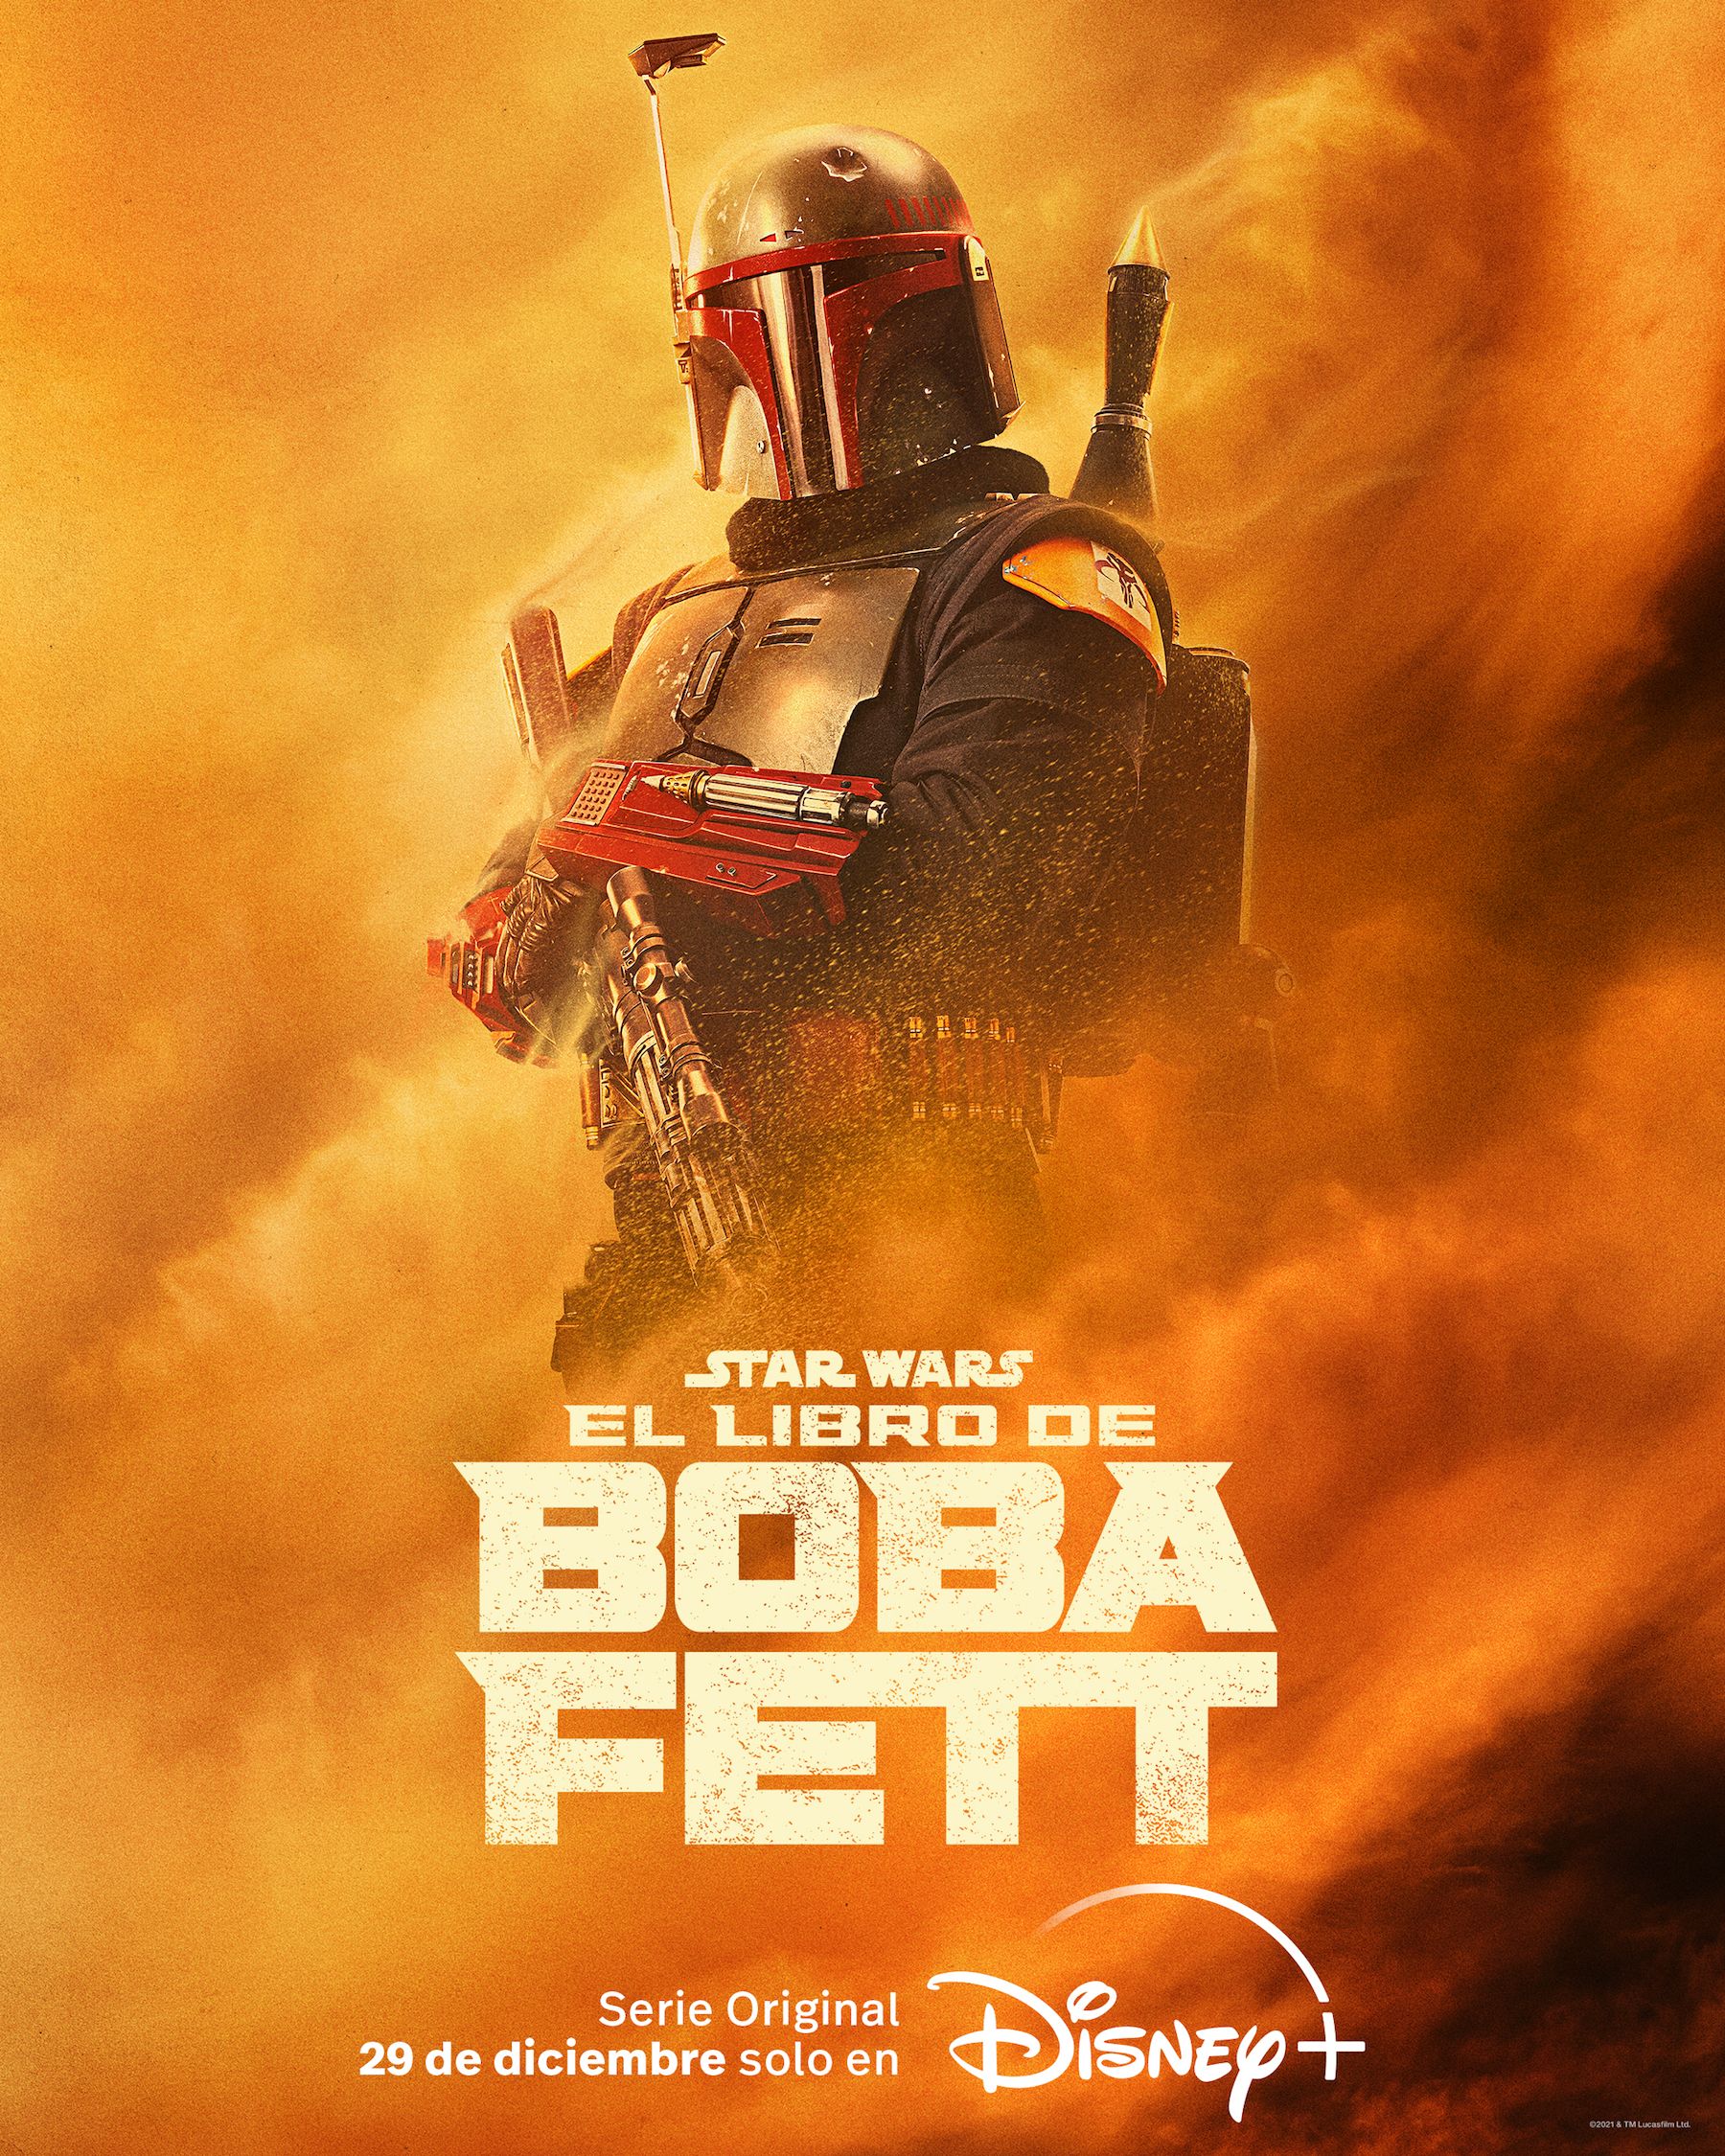 El libro de Boba Fett: teaser y póster de la serie de Disney